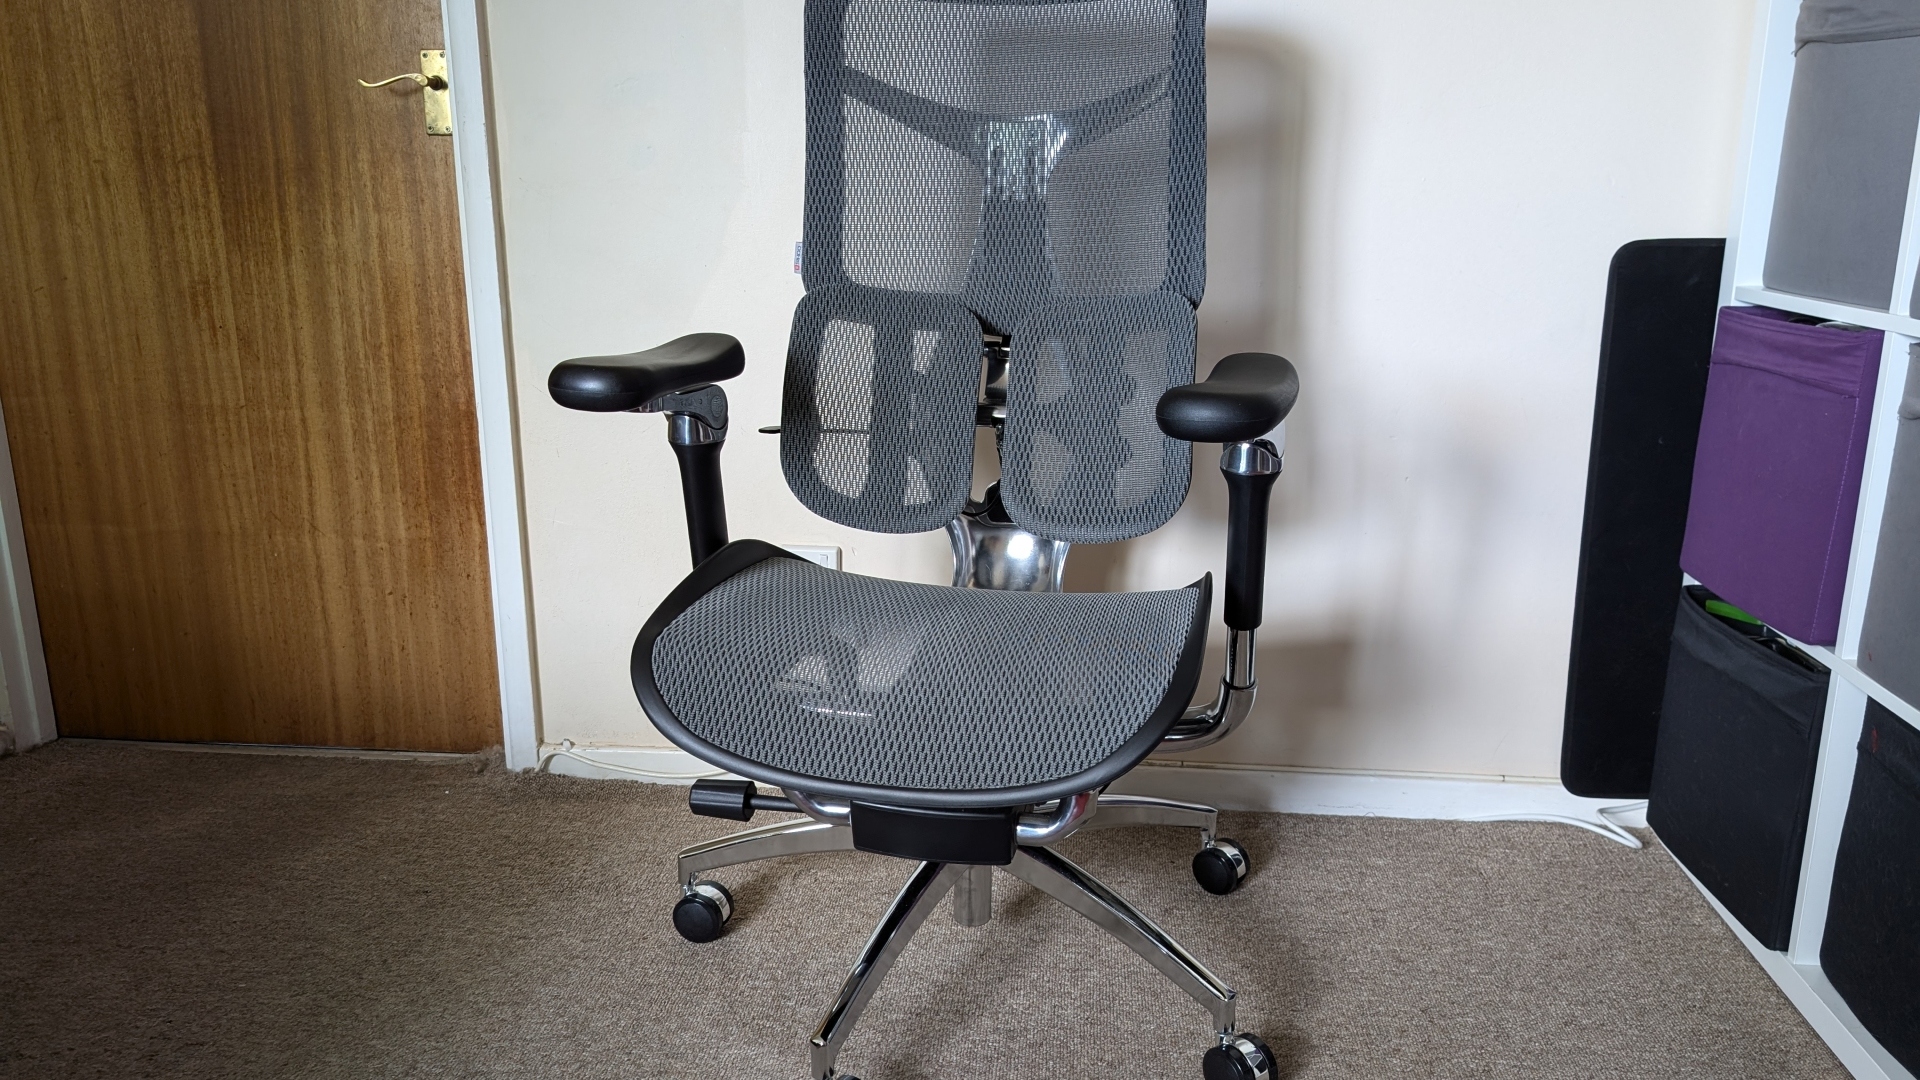 Sihoo Doro S300 ergonomik ofis koltuğu inceleme görüntüsü, kollar çerçevenin ortasında olacak şekilde sandalyeyi önden göstermektedir.